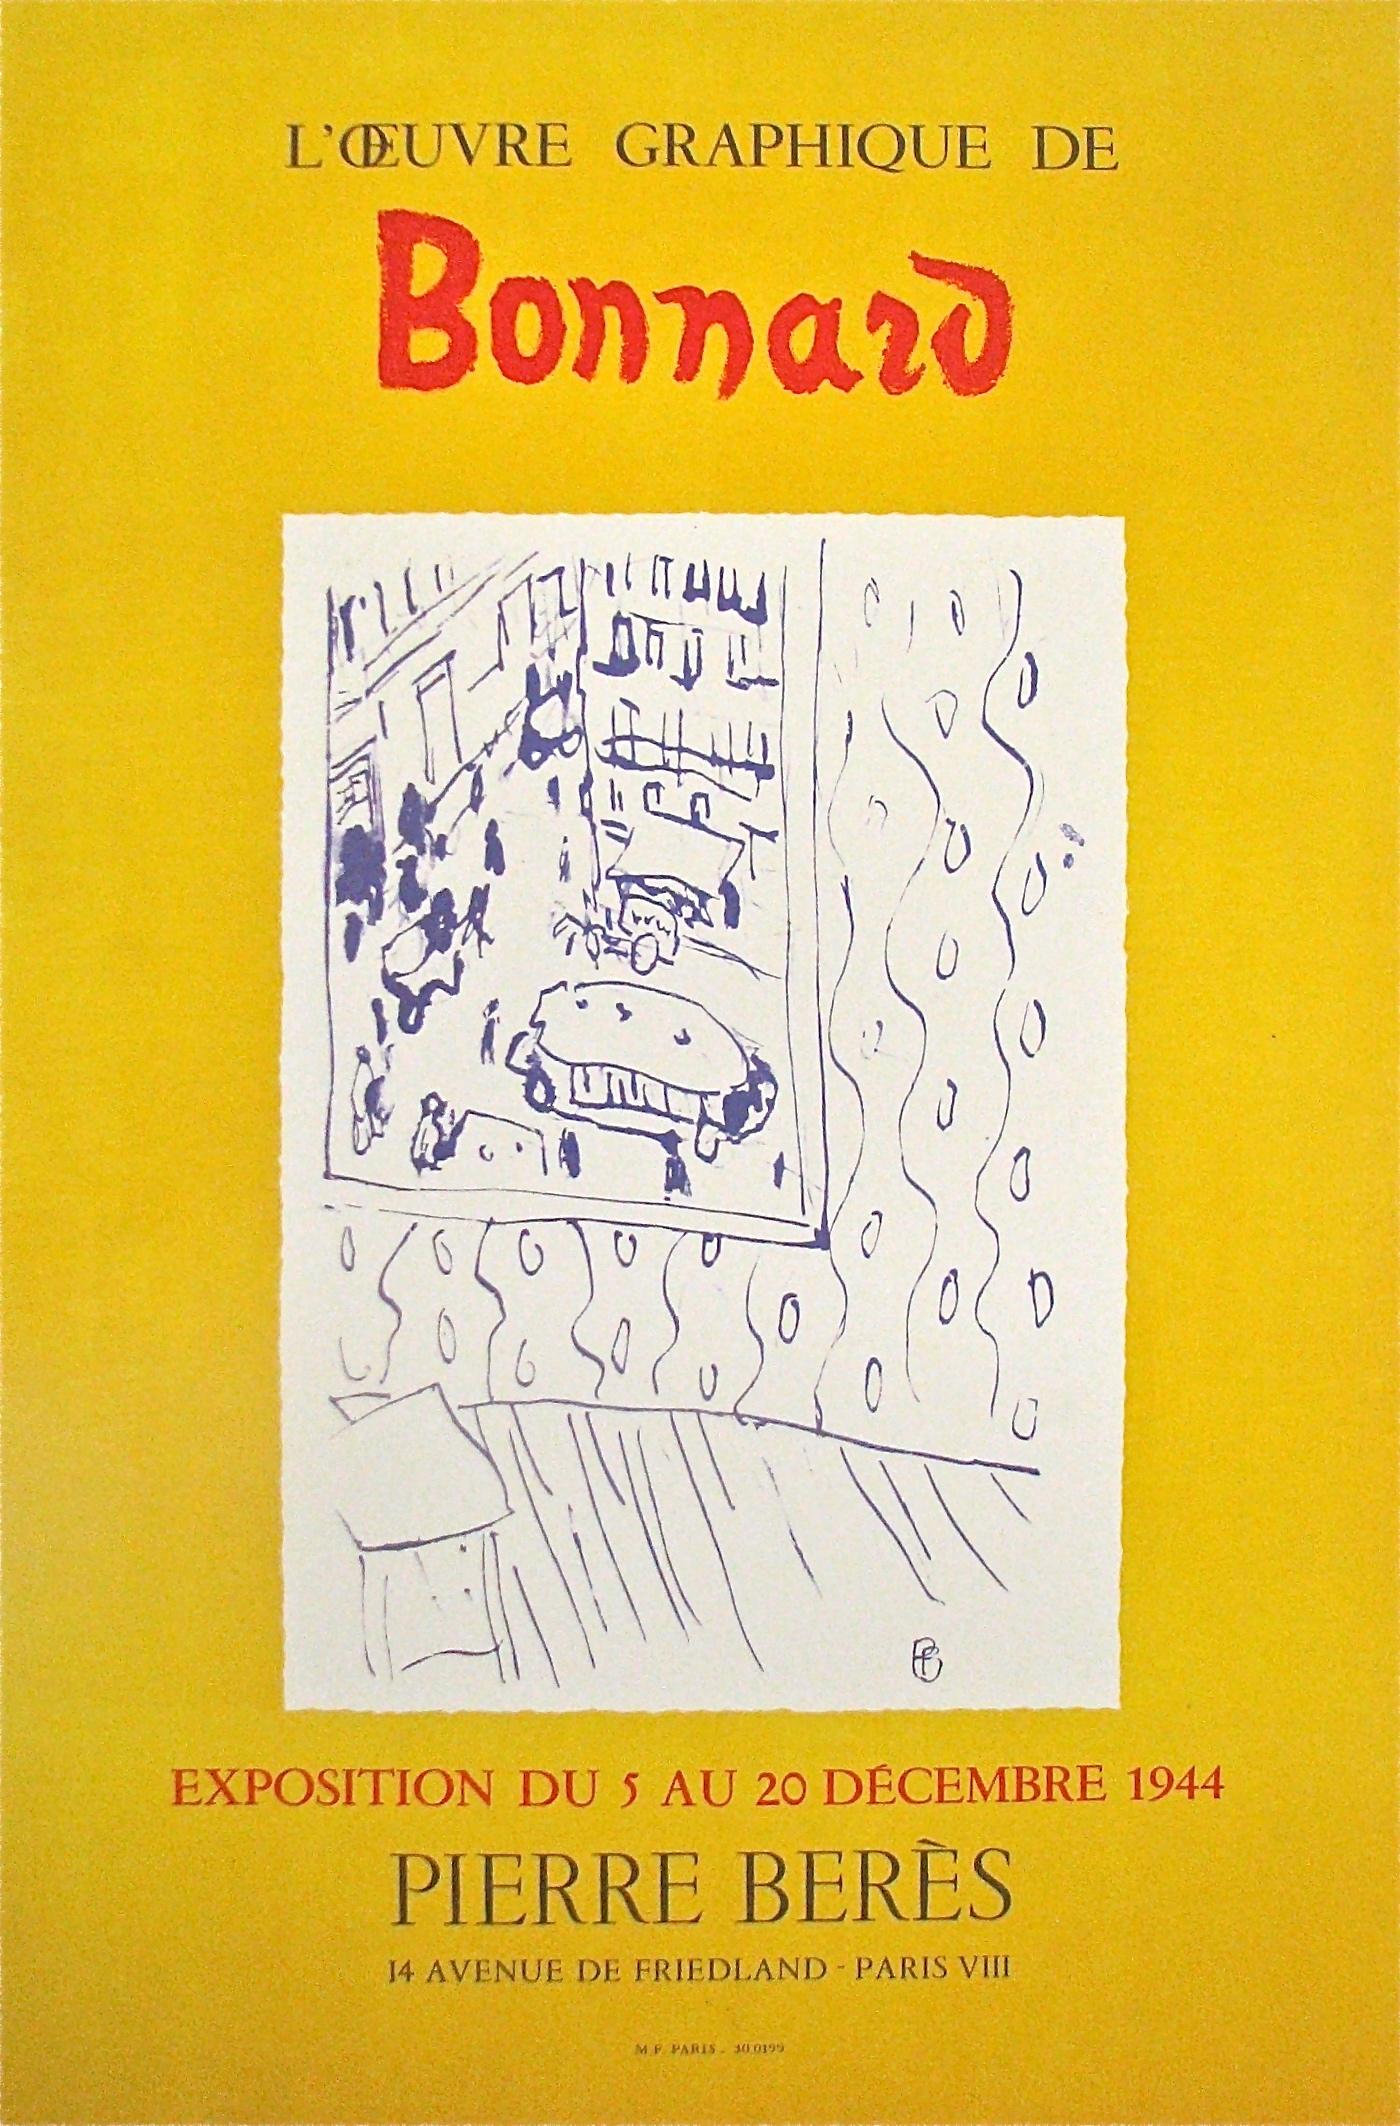 ""L'Oeuvre Graphique de Bonnard"" - Galerie Pierre Bers, (nach Pierre Bonnard